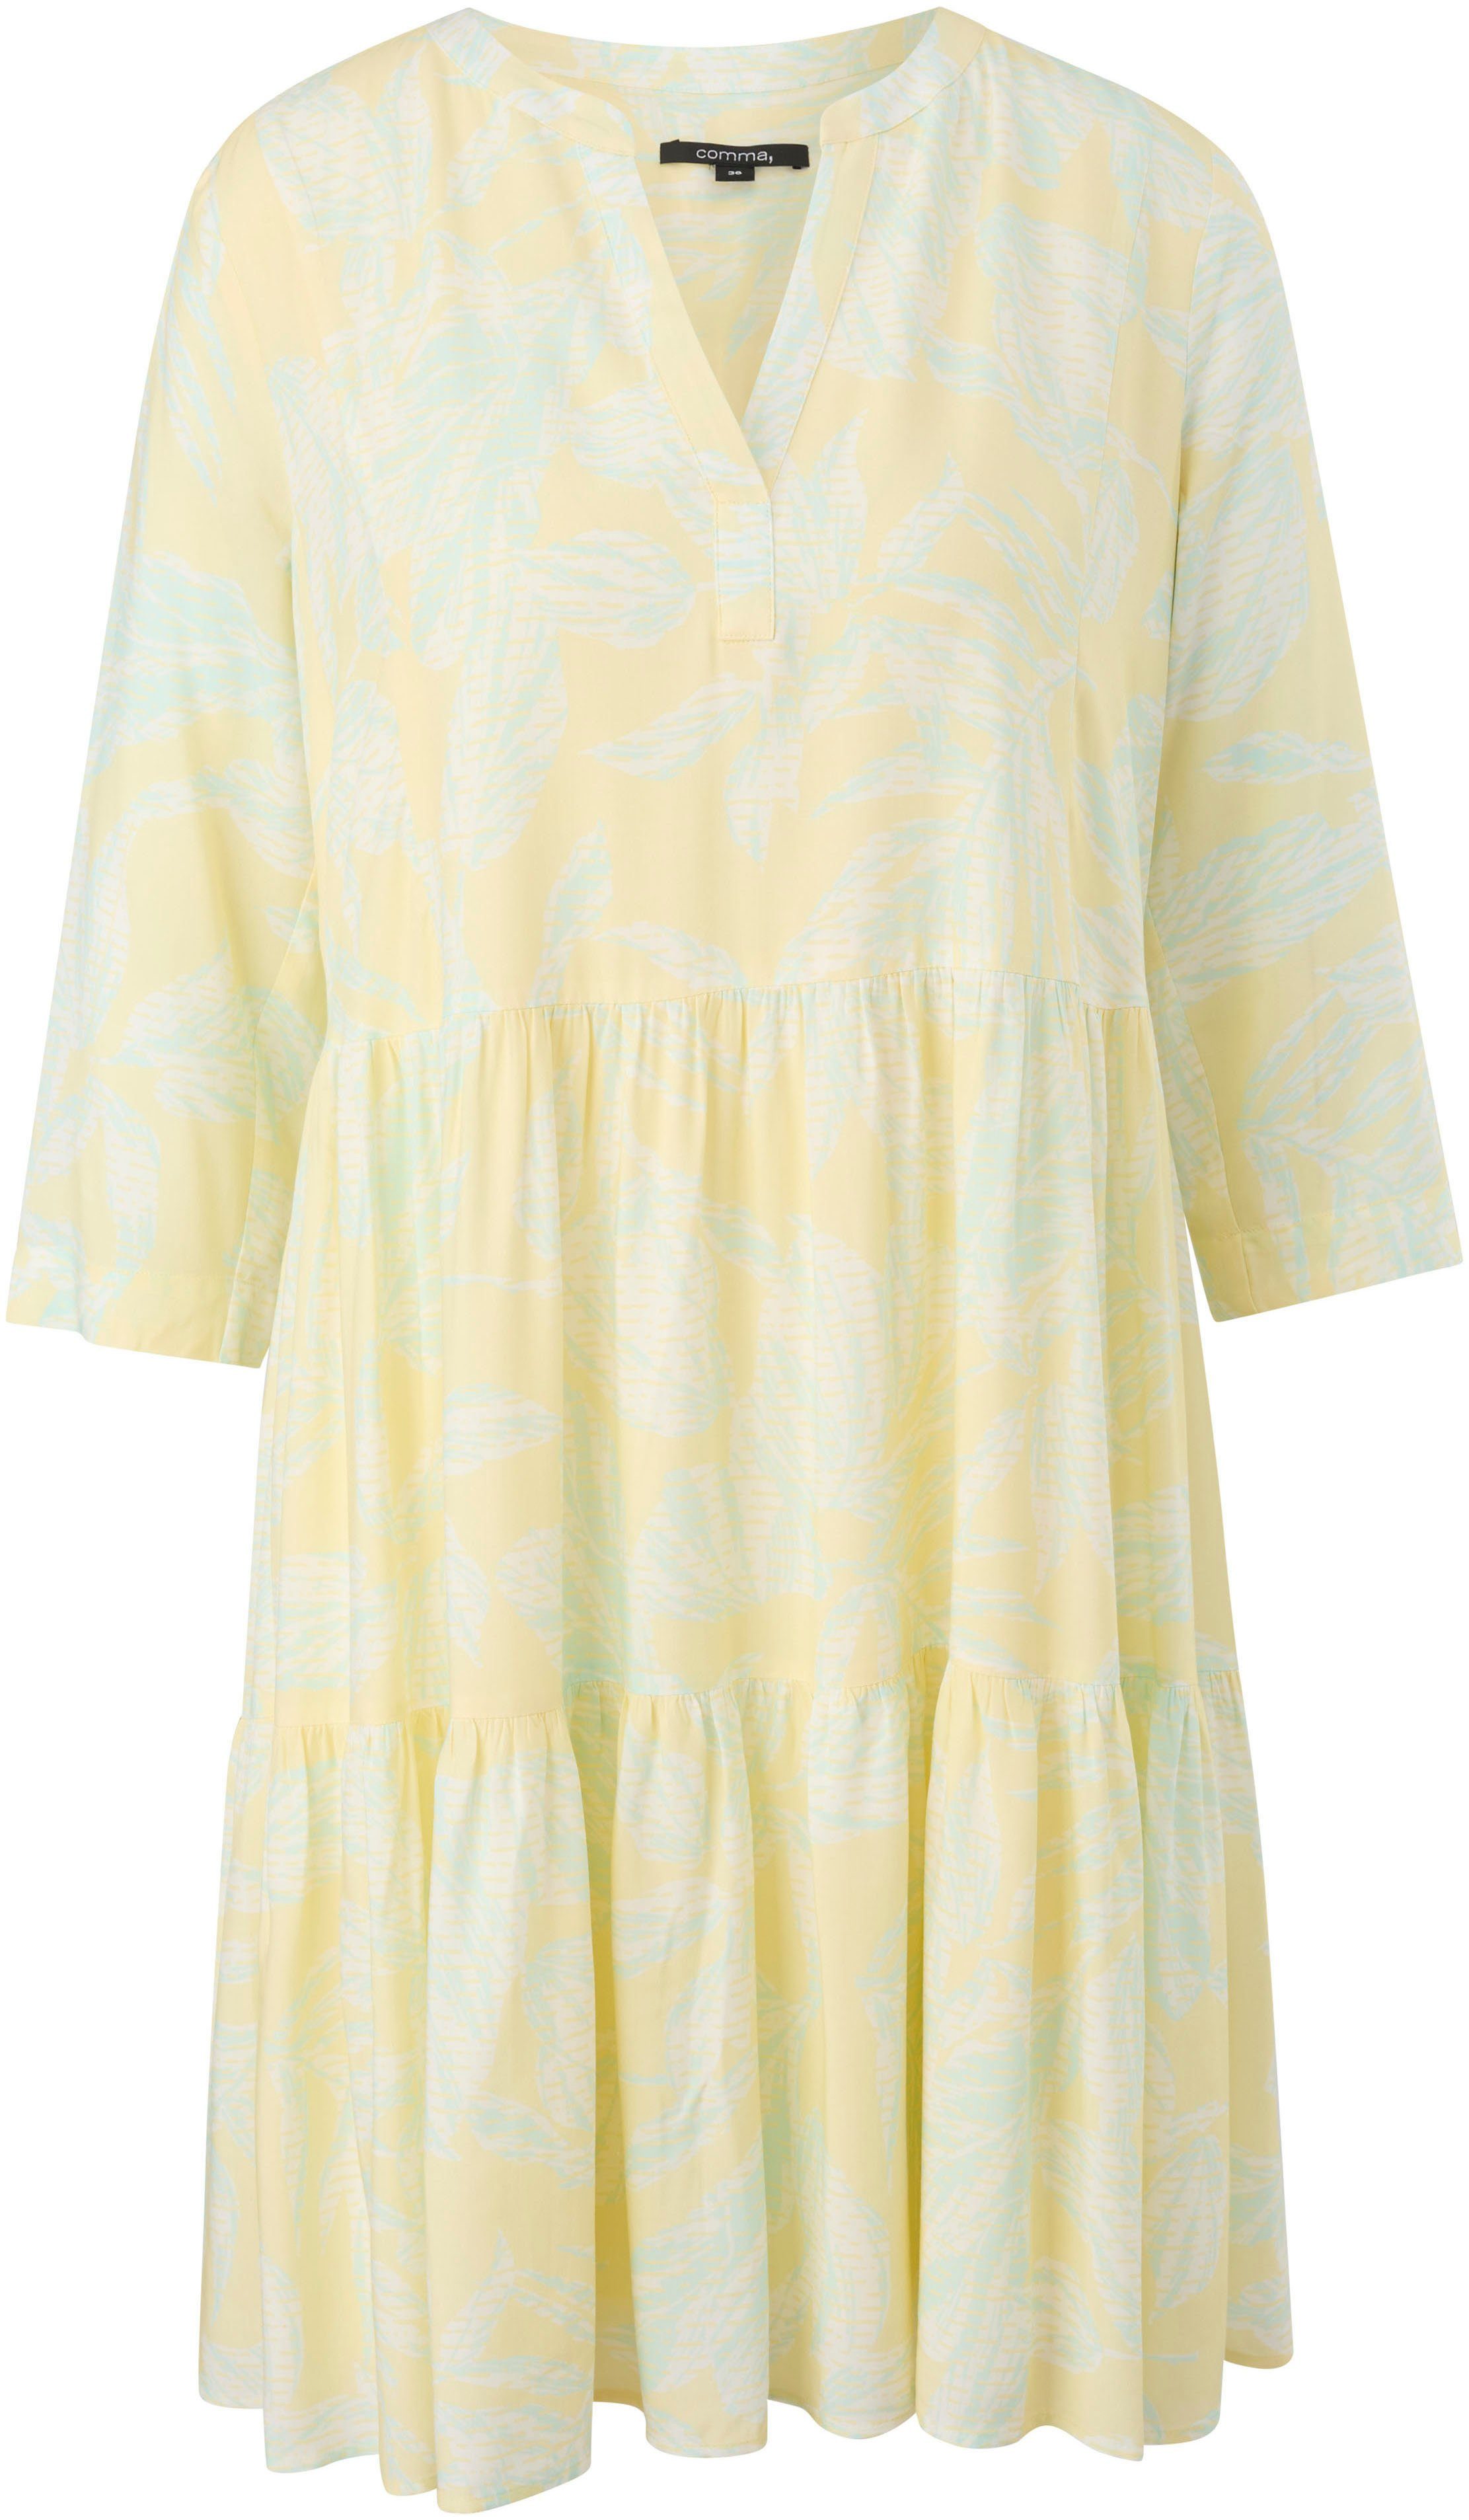 Comma A-Linien-Kleid mit sommerlichen Motiven